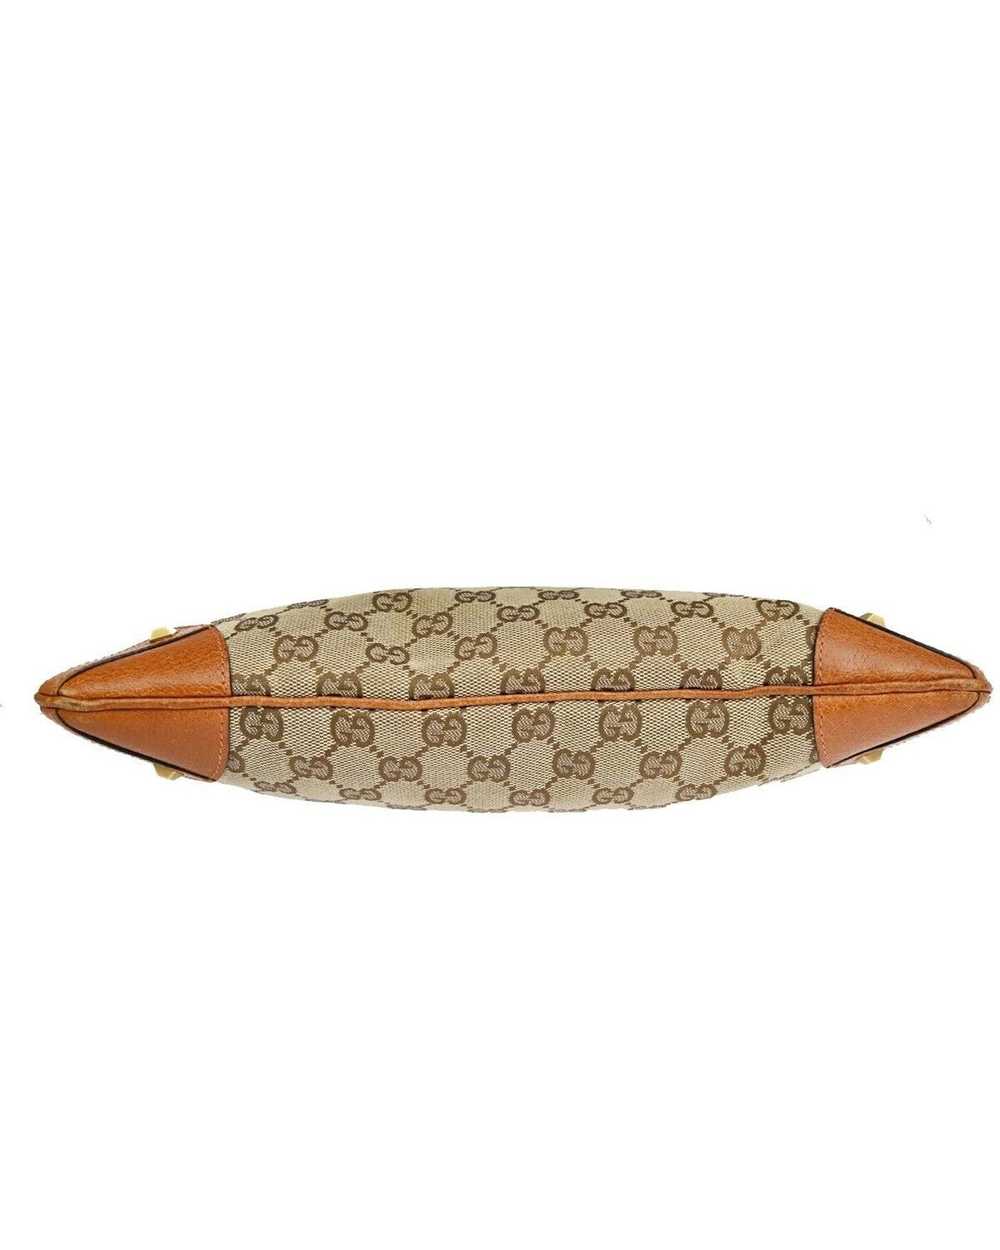 Gucci Canvas Shoulder Bag by Luxury Designer - image 6